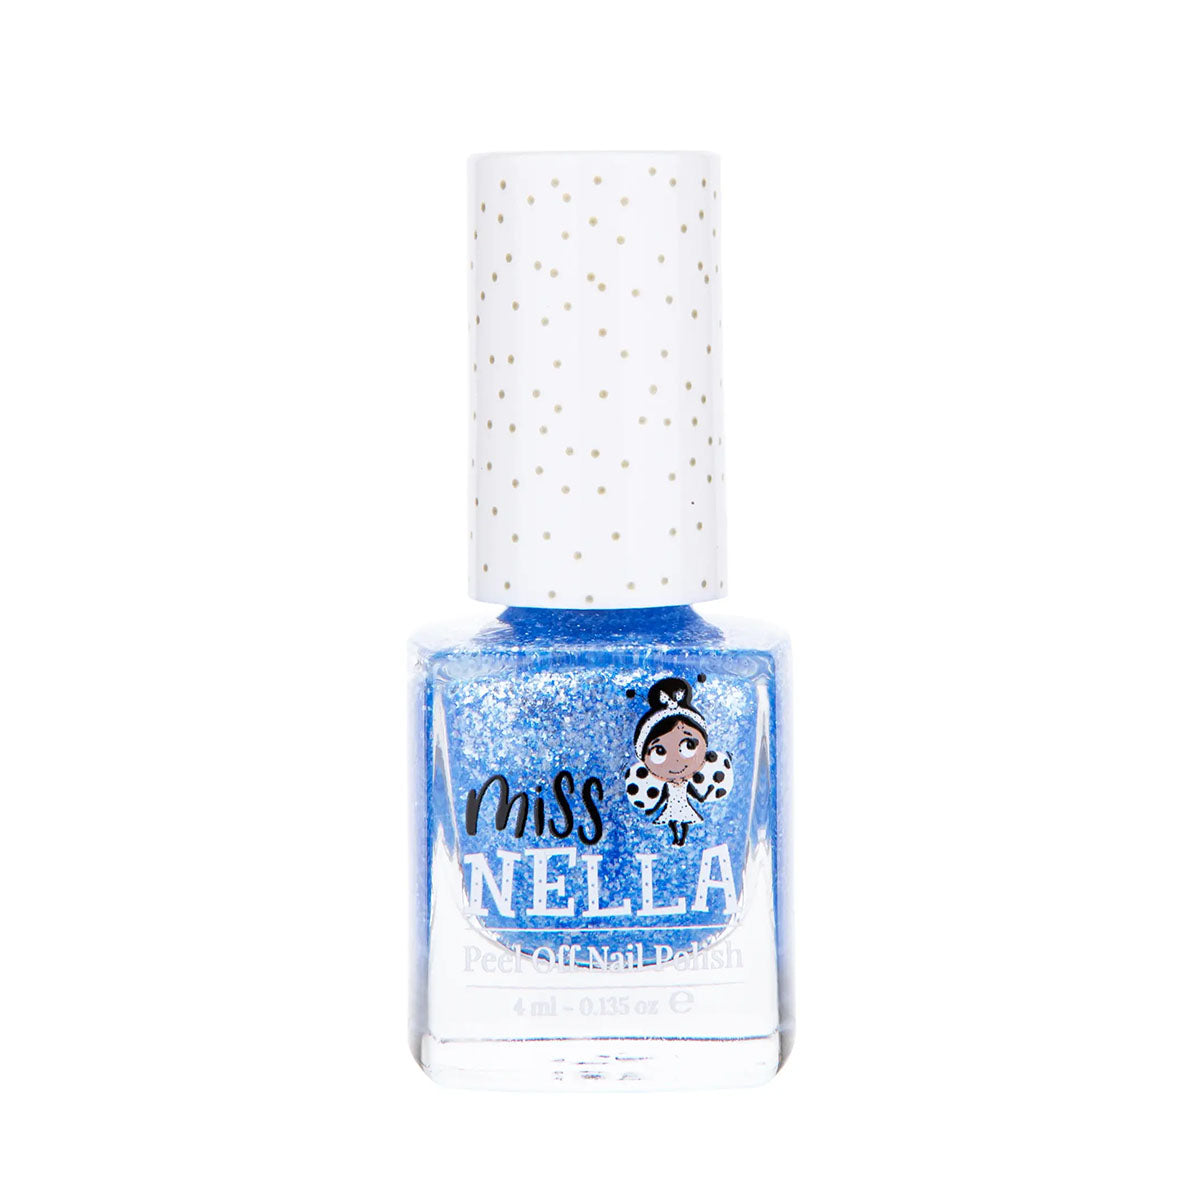 Laat de nageltjes van jouw kindje shinen met de nagellak elephunky van het merk Miss Nella. De peel off nagellak is speciaal ontworpen voor kinderen en is vrij van chemicaliën. In verschillende kleuren. VanZus